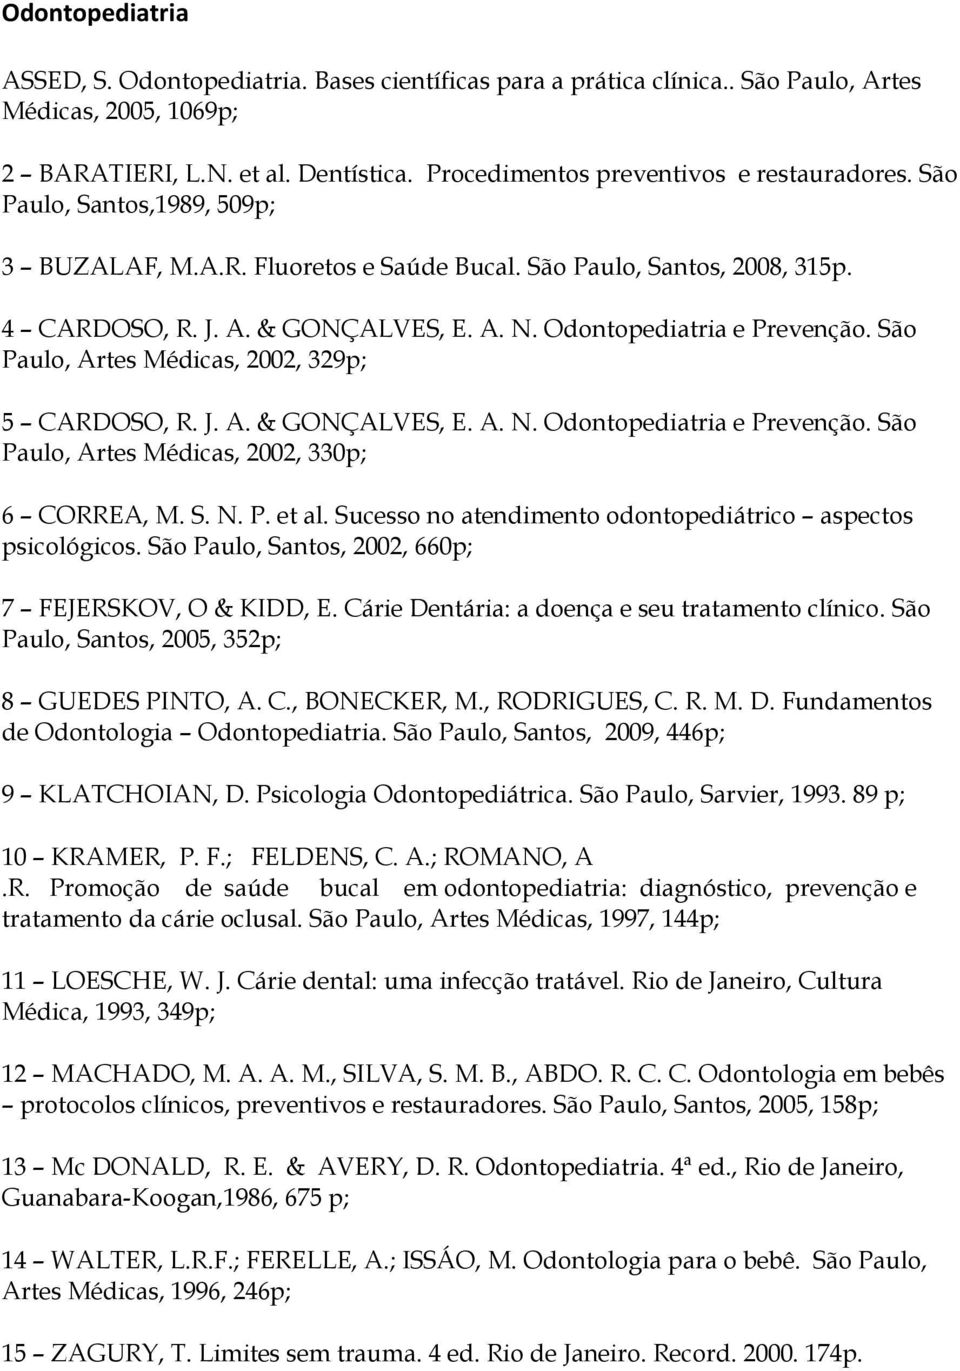 Odontopediatria e Prevenção. São Paulo, Artes Médicas, 2002, 329p; 5 CARDOSO, R. J. A. & GONÇALVES, E. A. N. Odontopediatria e Prevenção. São Paulo, Artes Médicas, 2002, 330p; 6 CORREA, M. S. N. P. et al.